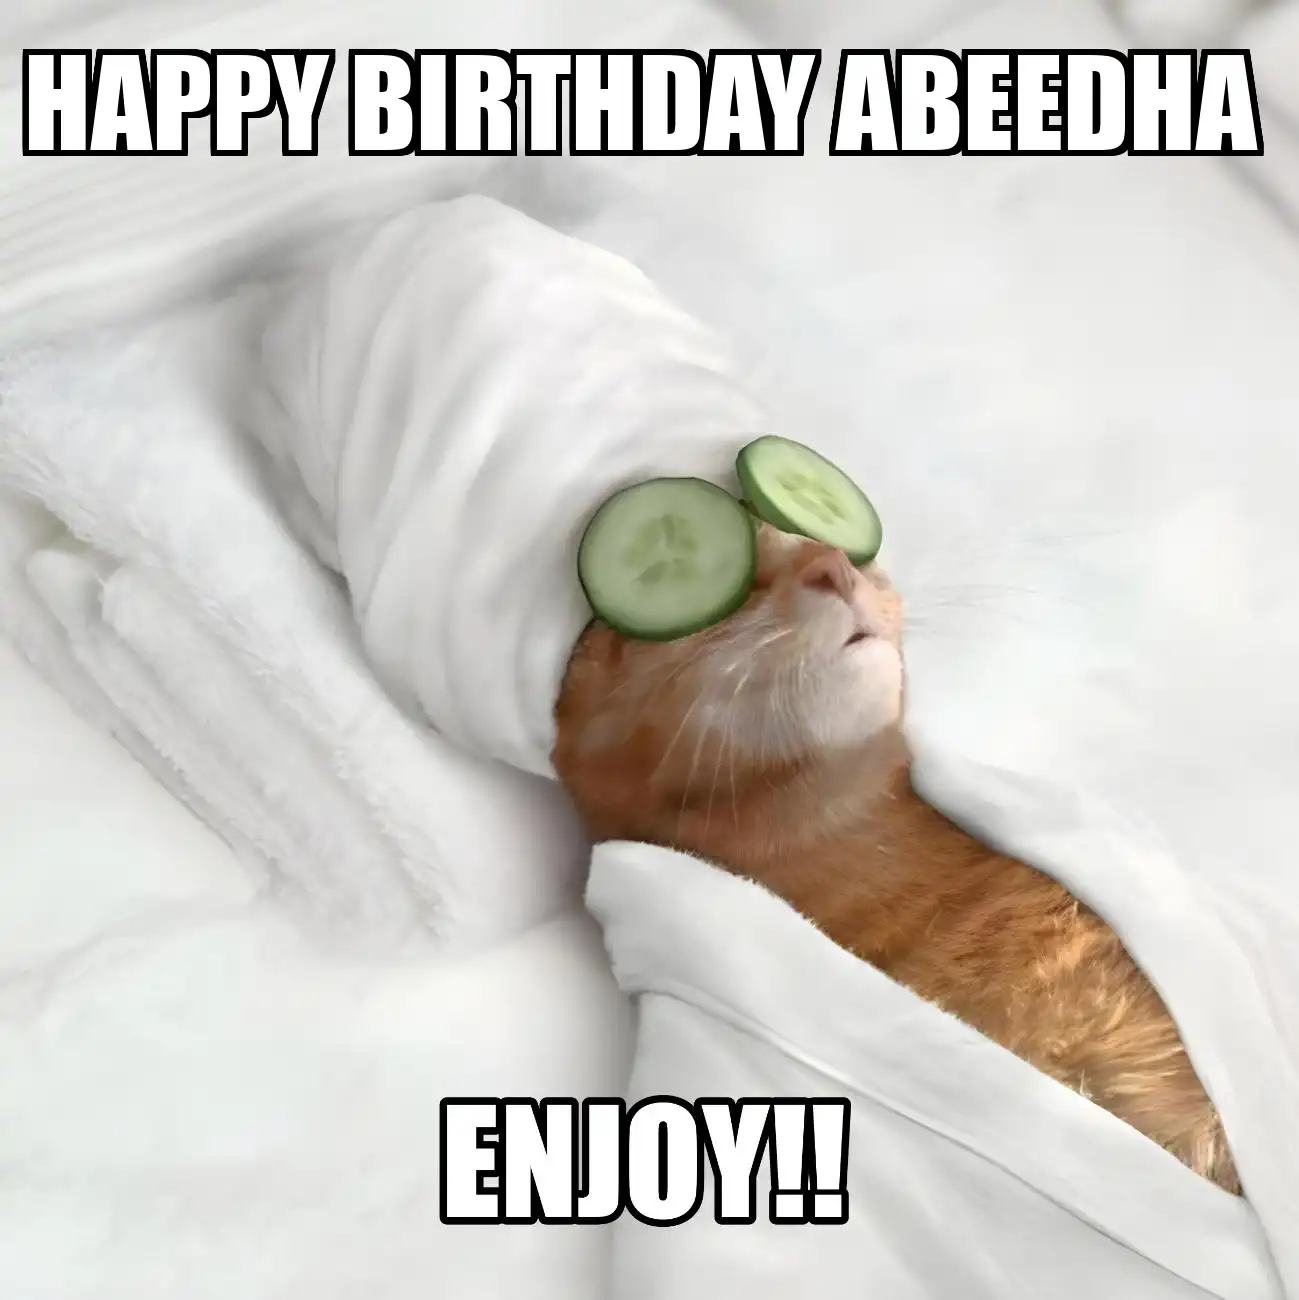 Happy Birthday Abeedha Enjoy Cat Meme